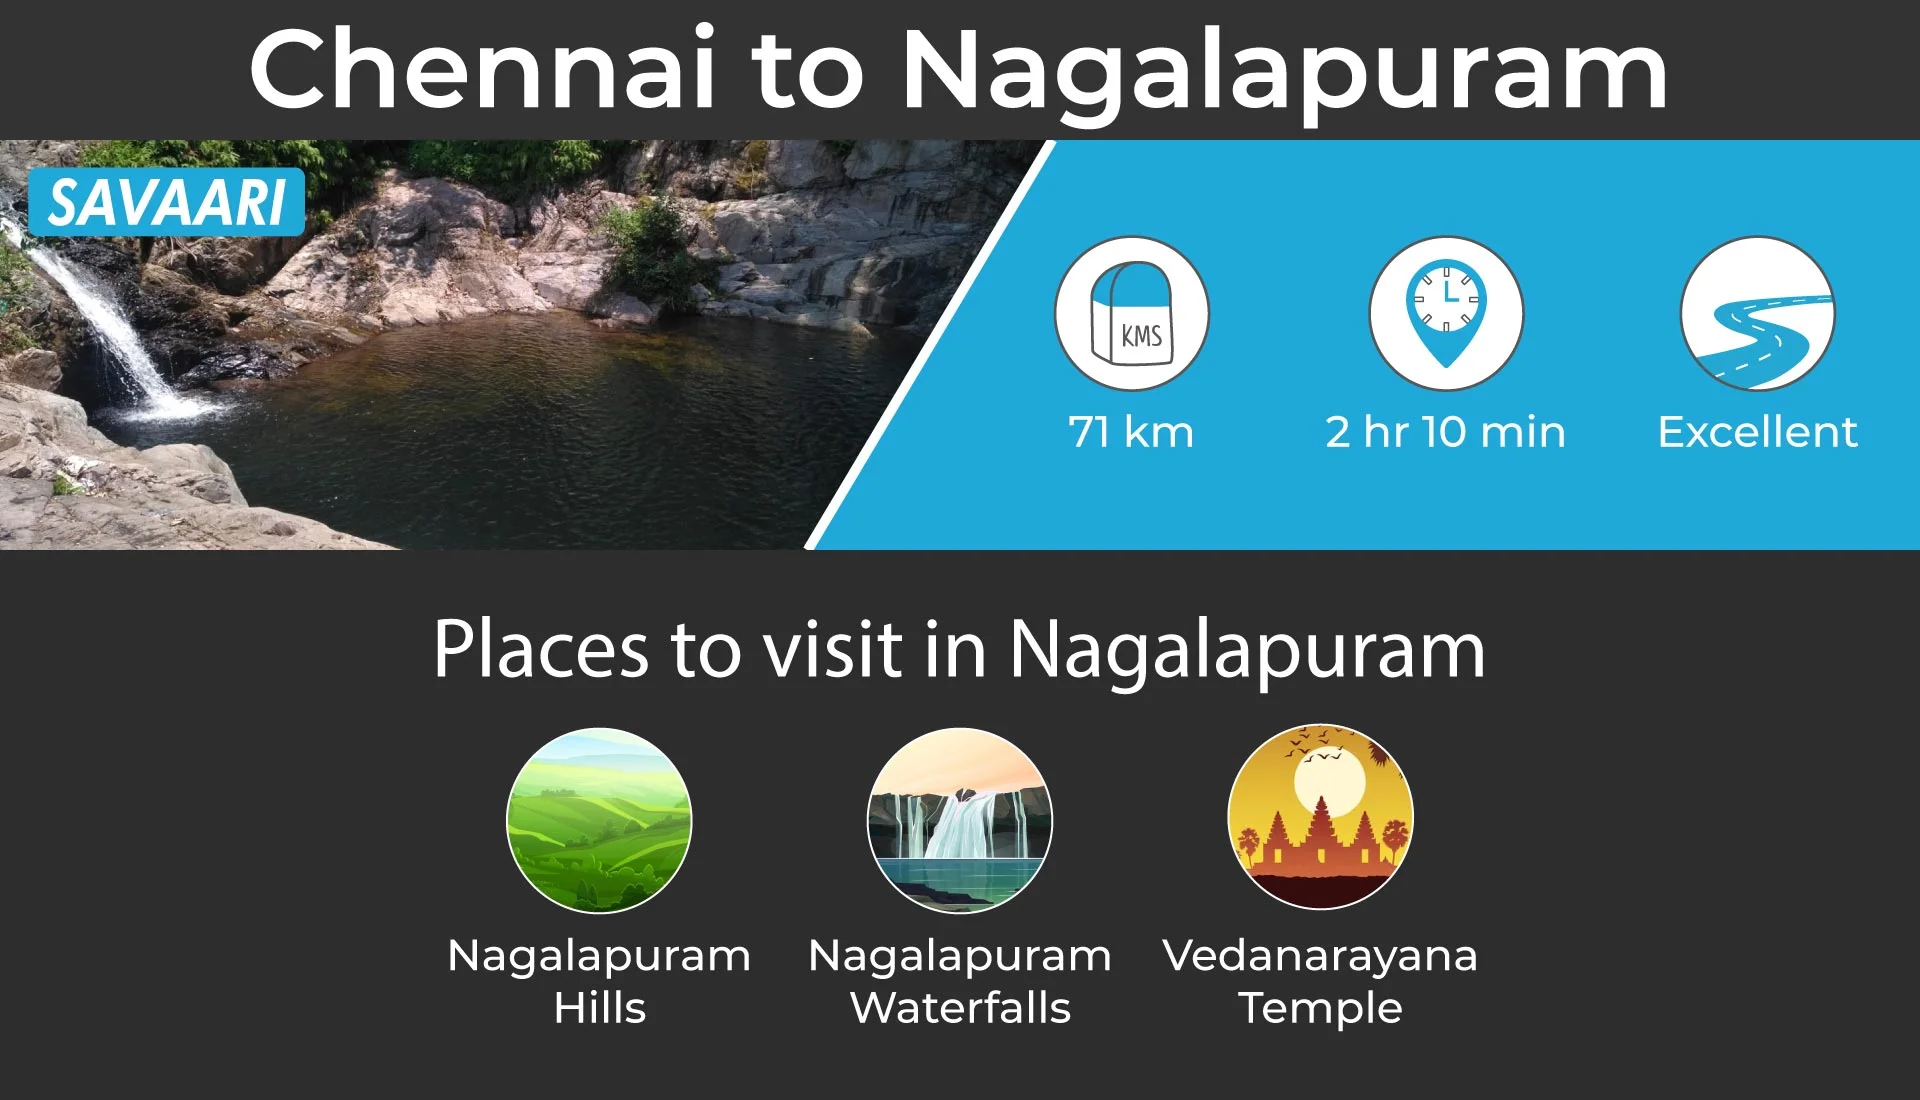 Chennai to Nagalapuram short drive